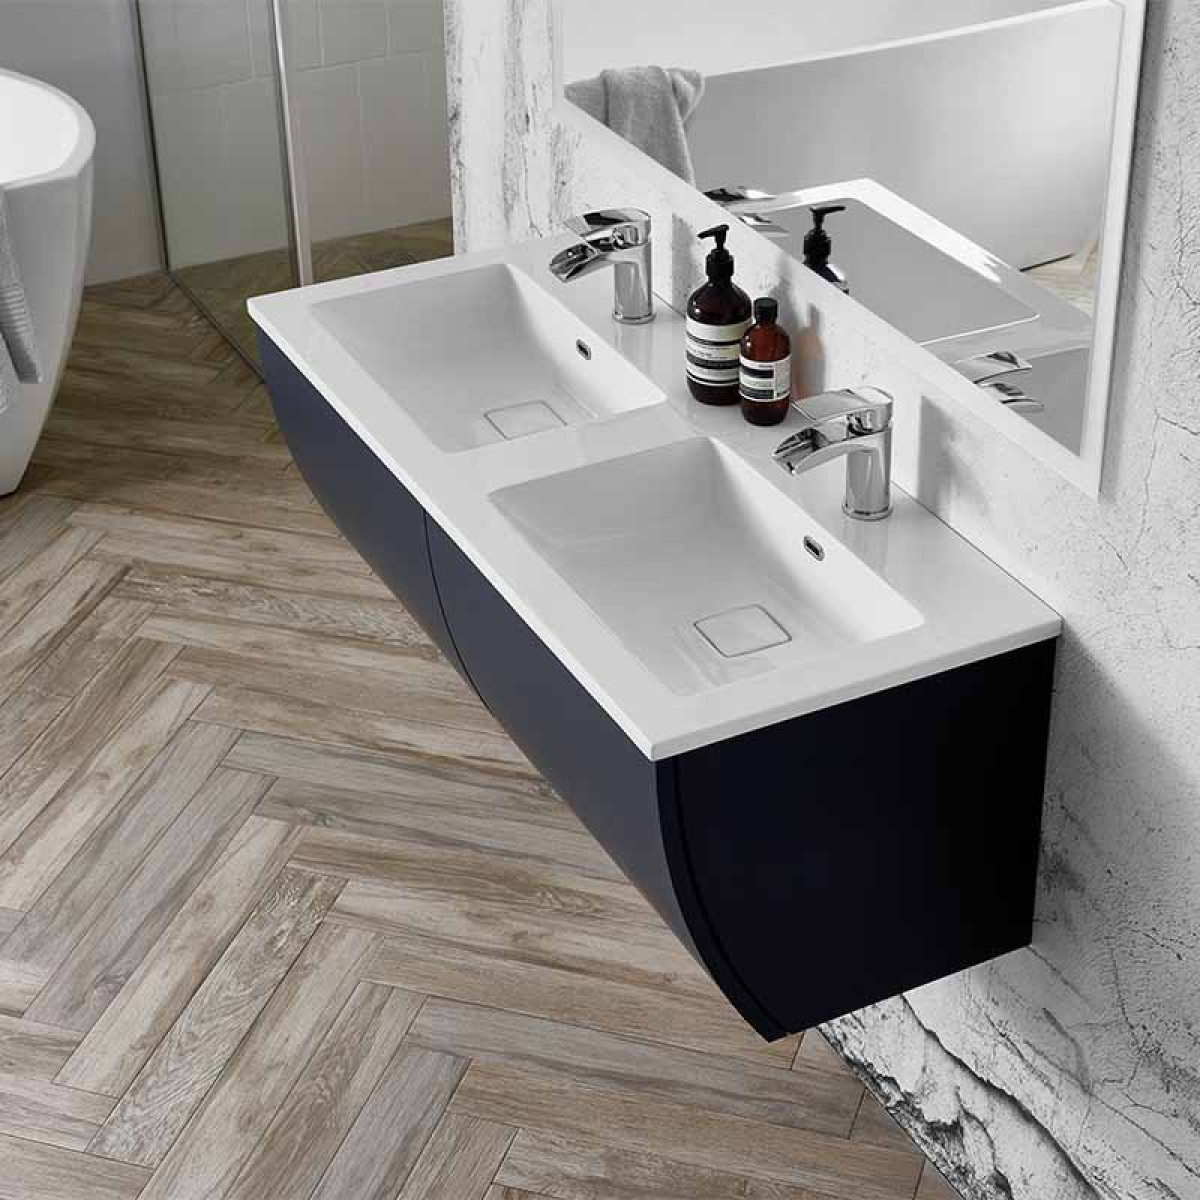 Elation Kiyo 1100mm Wall Hung Pearl, Double Basin Bathroom Vanity Units